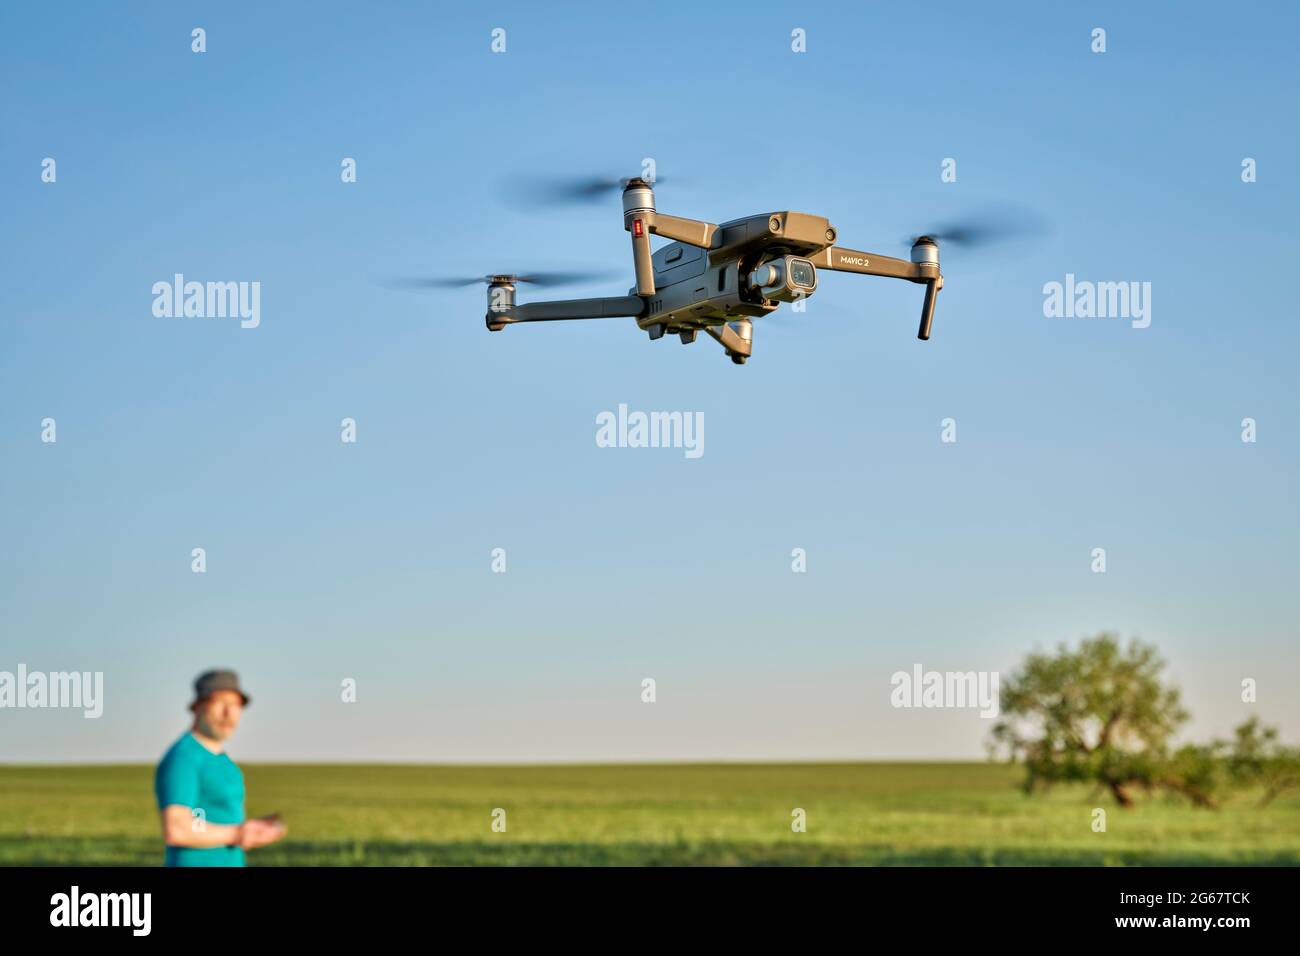 Briggsdale, CO, USA - 8. Juni 2021: Die funkgesteuerte DJI Mavic 2 Pro Quadcopter-Drohne fliegt über grüne Prärie mit einem unfokussierten männlichen Piloten Stockfoto